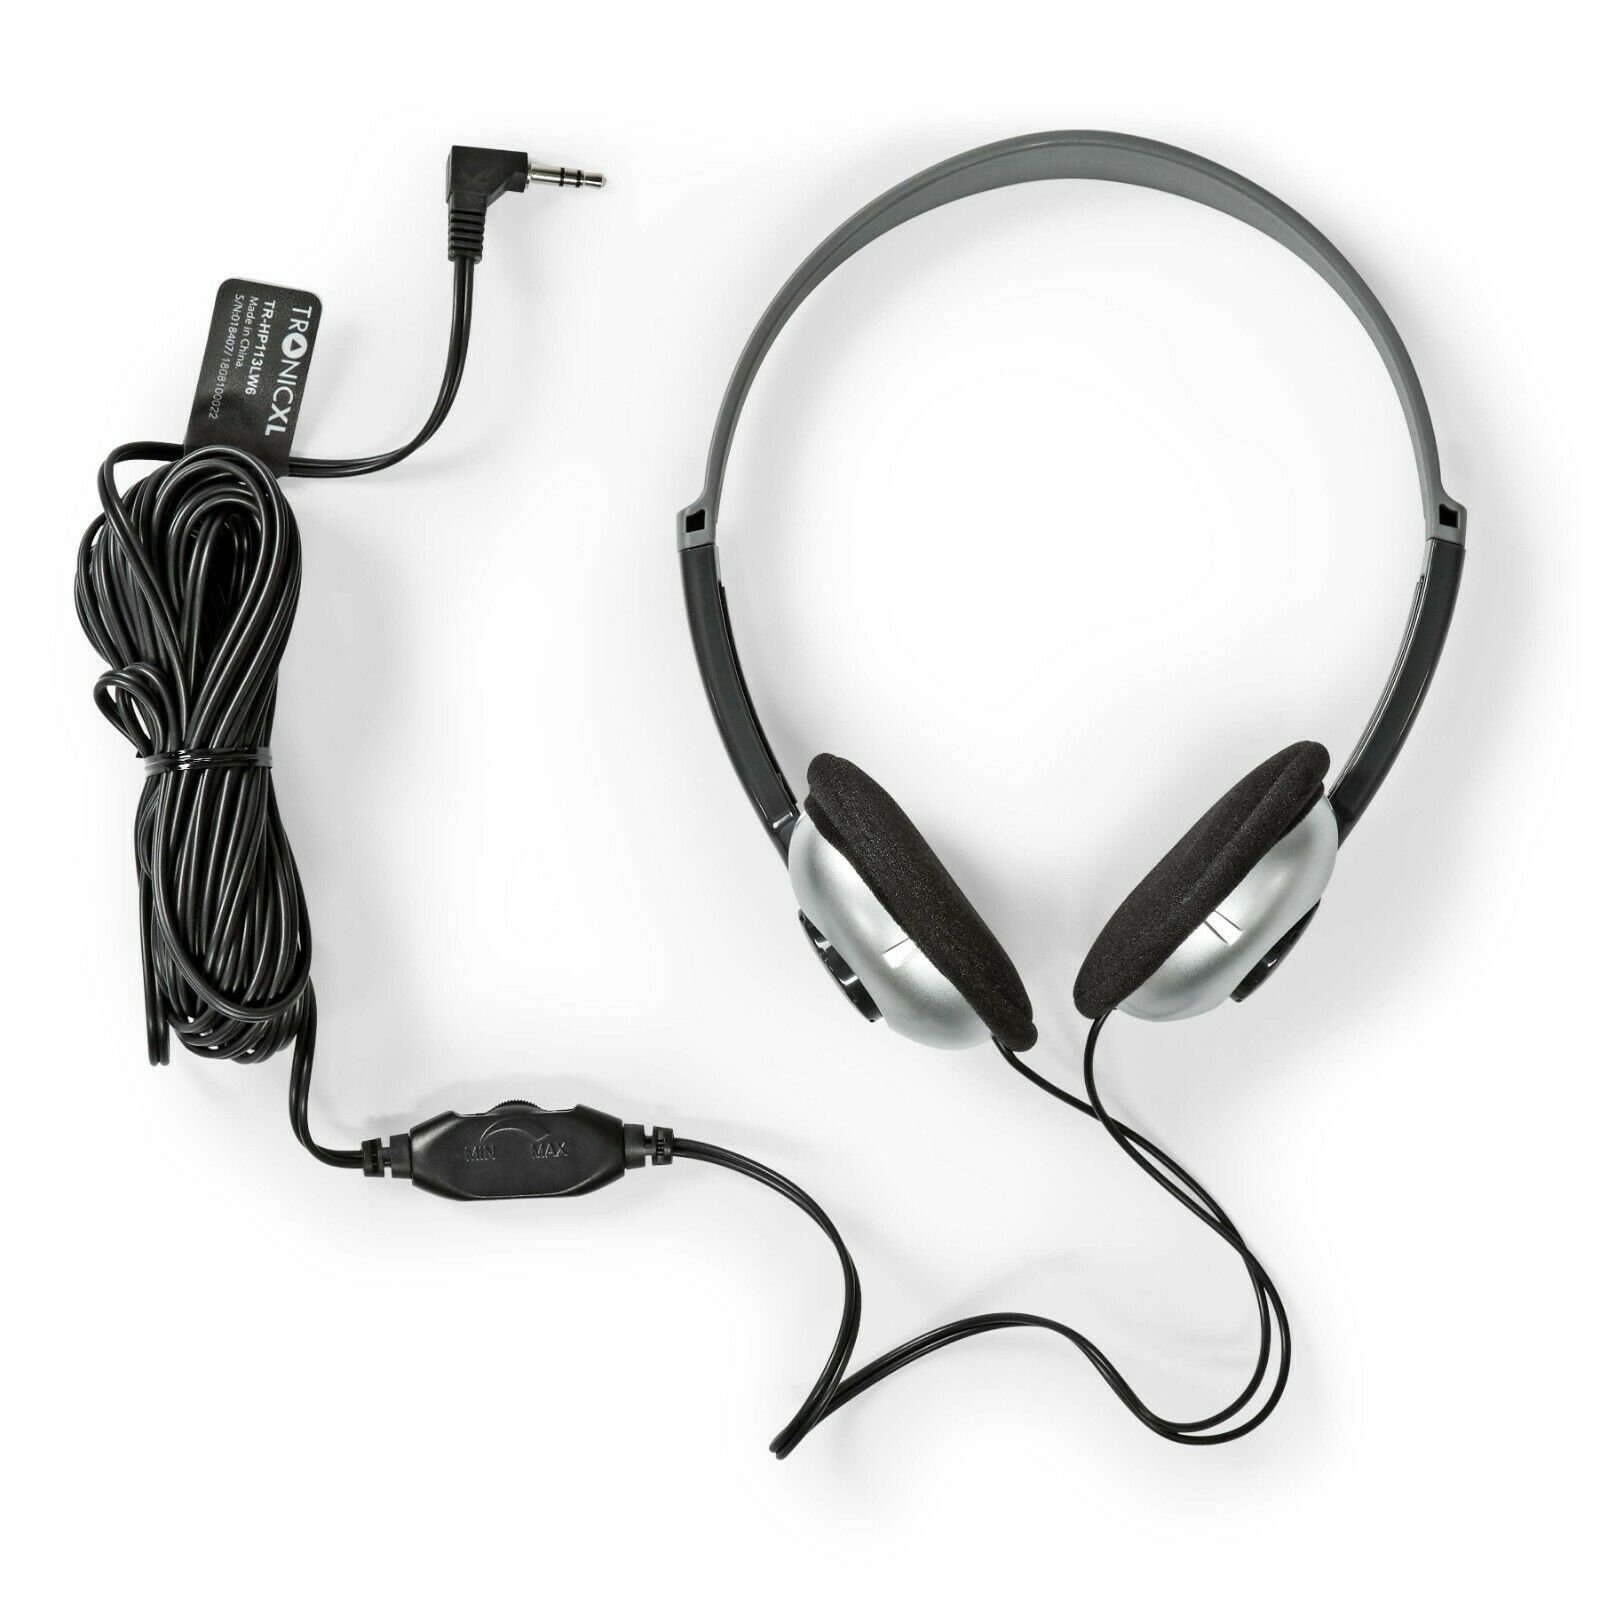 Kabel TronicXL 6m Fernseh 3,5mm TV Klinke lang HiFi-Kopfhörer Kopfbügel langes Kopfhörer